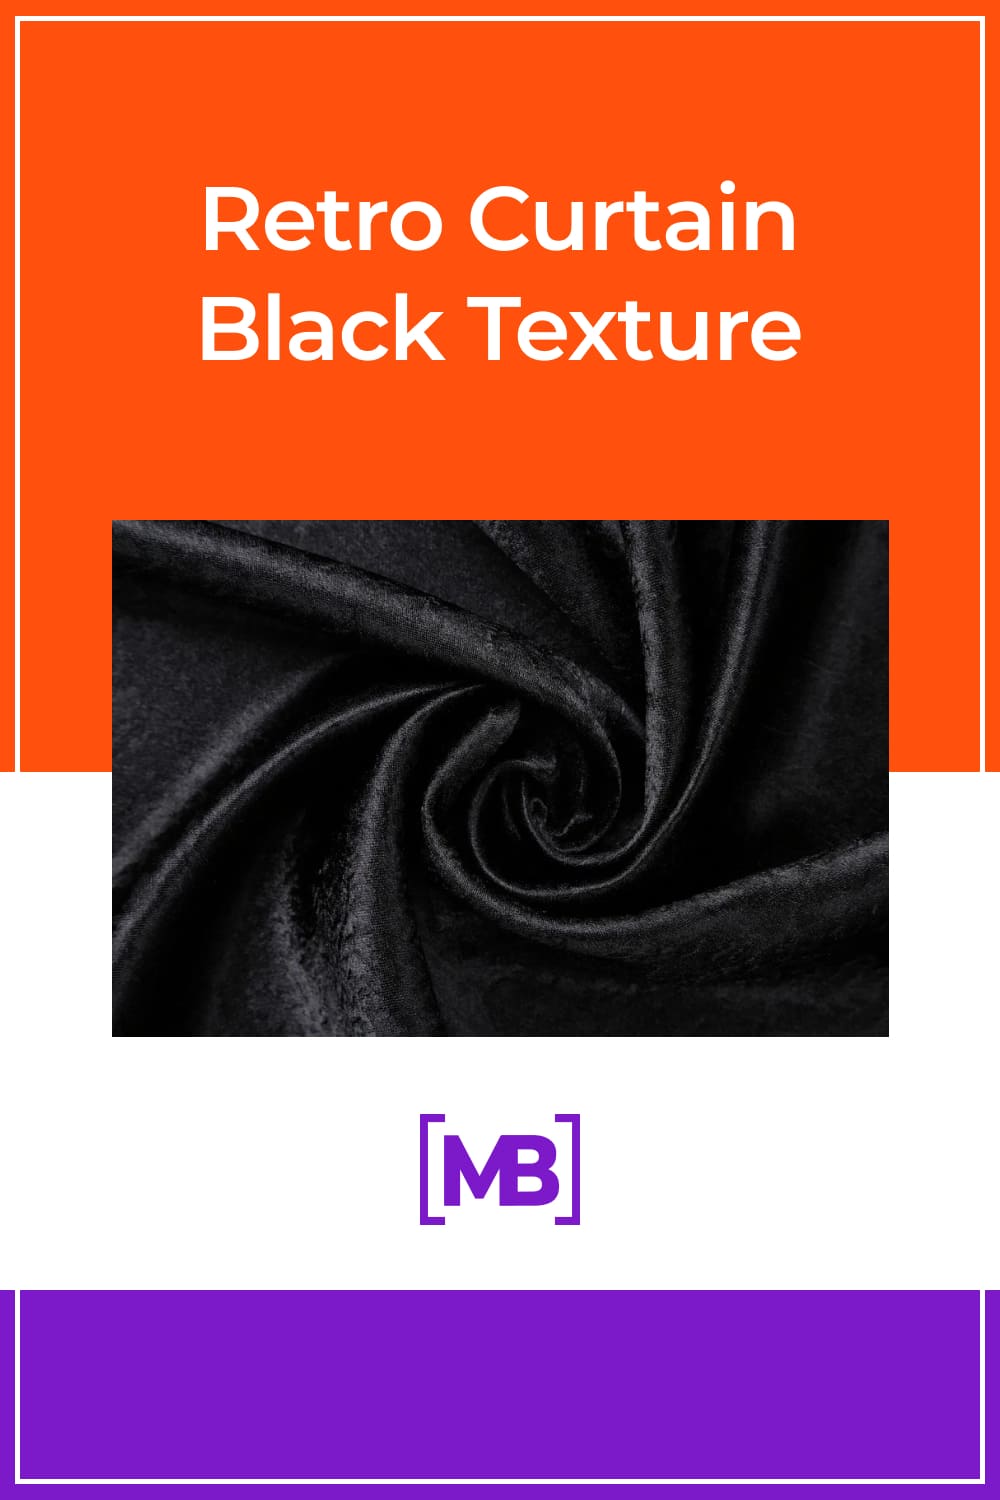 Retro black curtain texture.